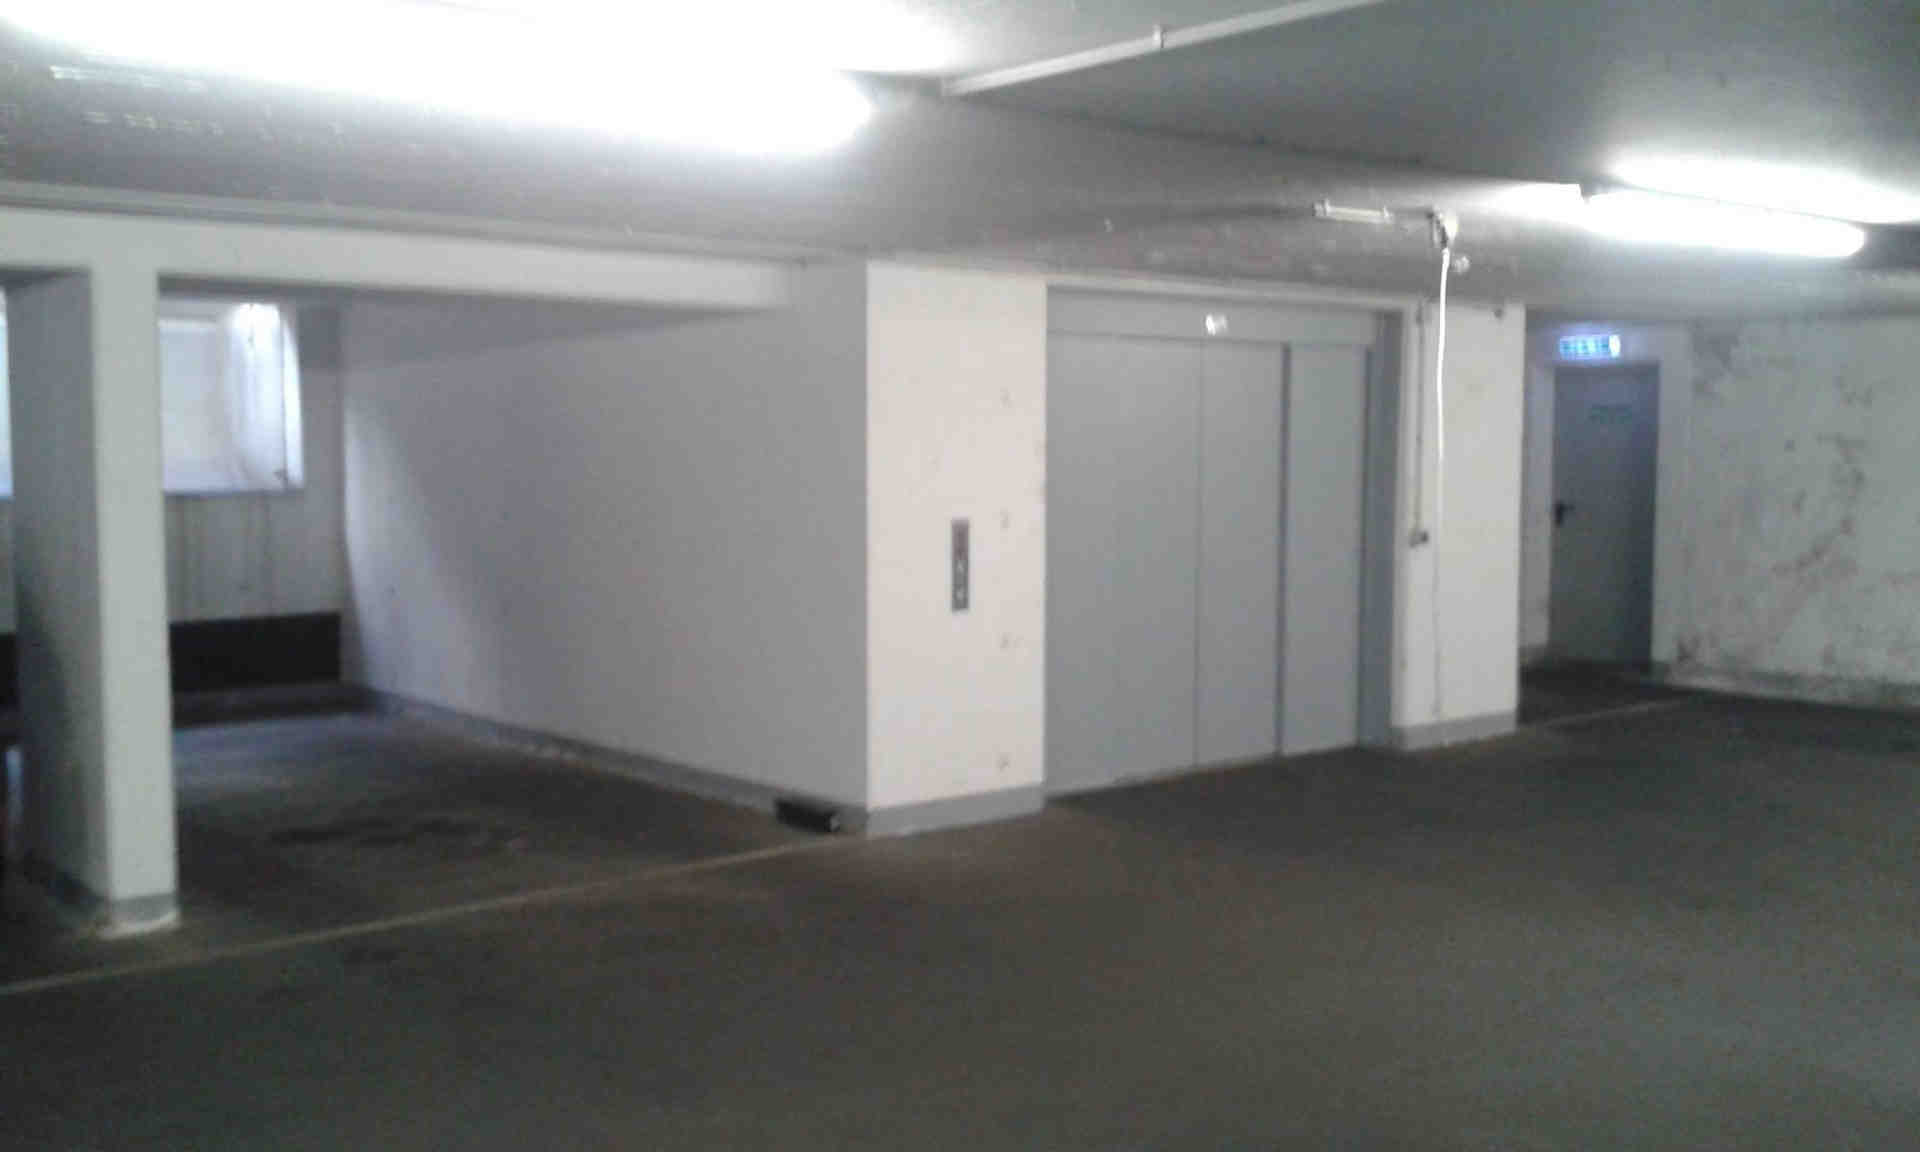 Parkovacie miesto/garáž v suteréne v centre Kolína (Zülpi/Barba) - Mauritiuswall, 50676 Kolín nad Rýnom - Fotka 2 z 3